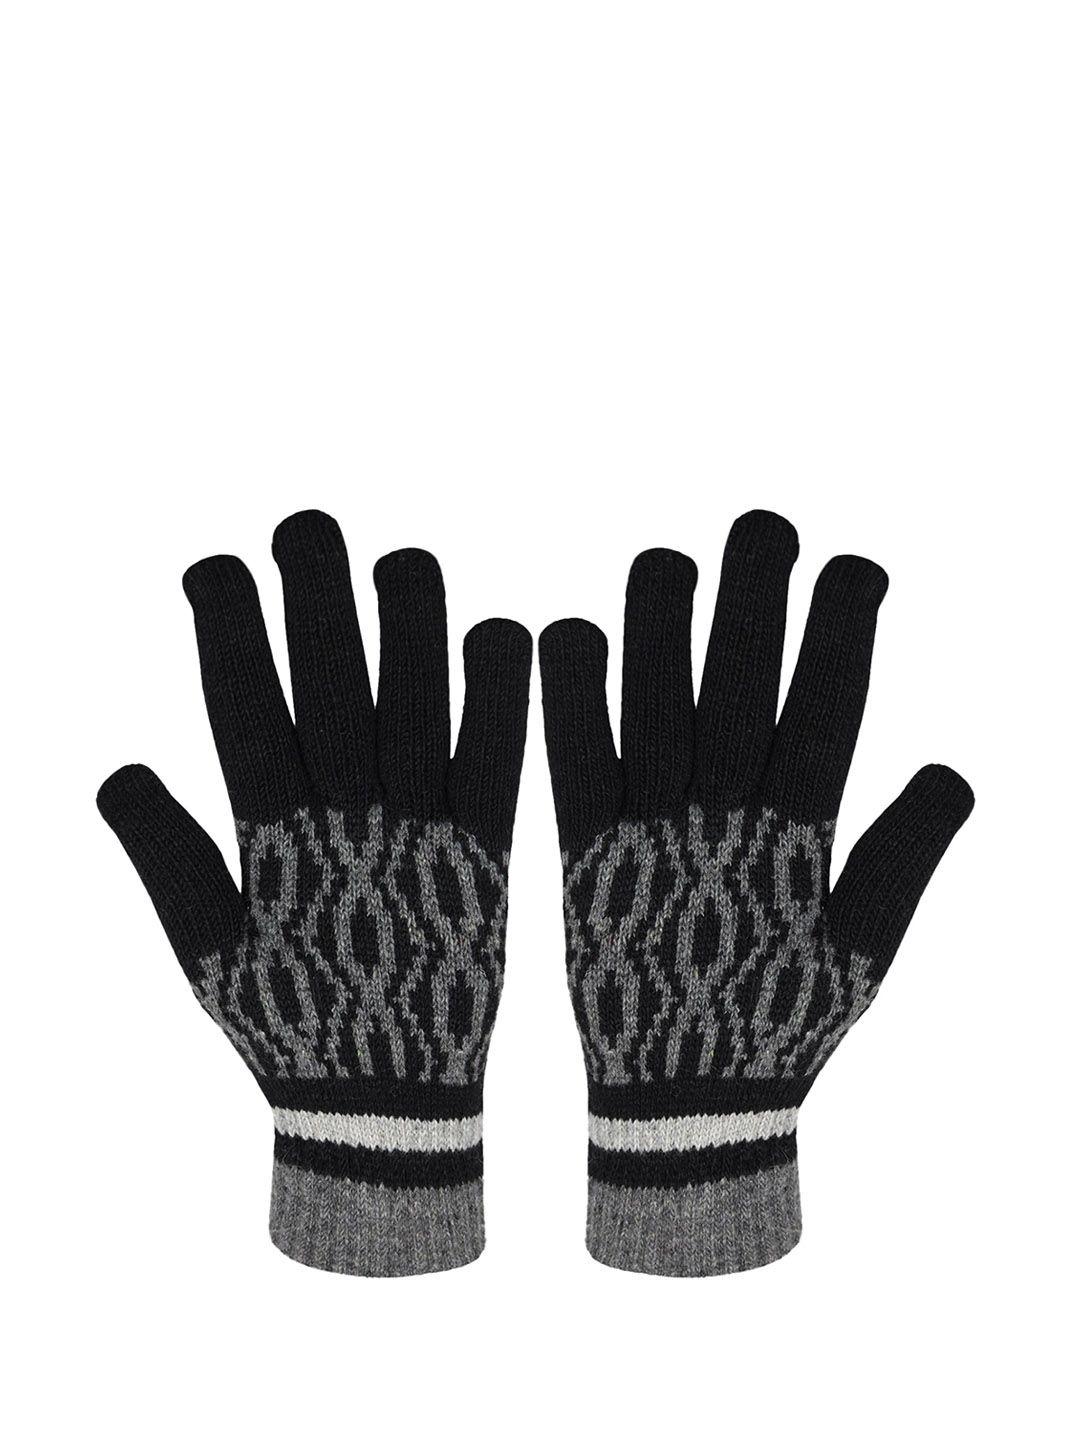 baesd men patterned full finger woolen winter gloves